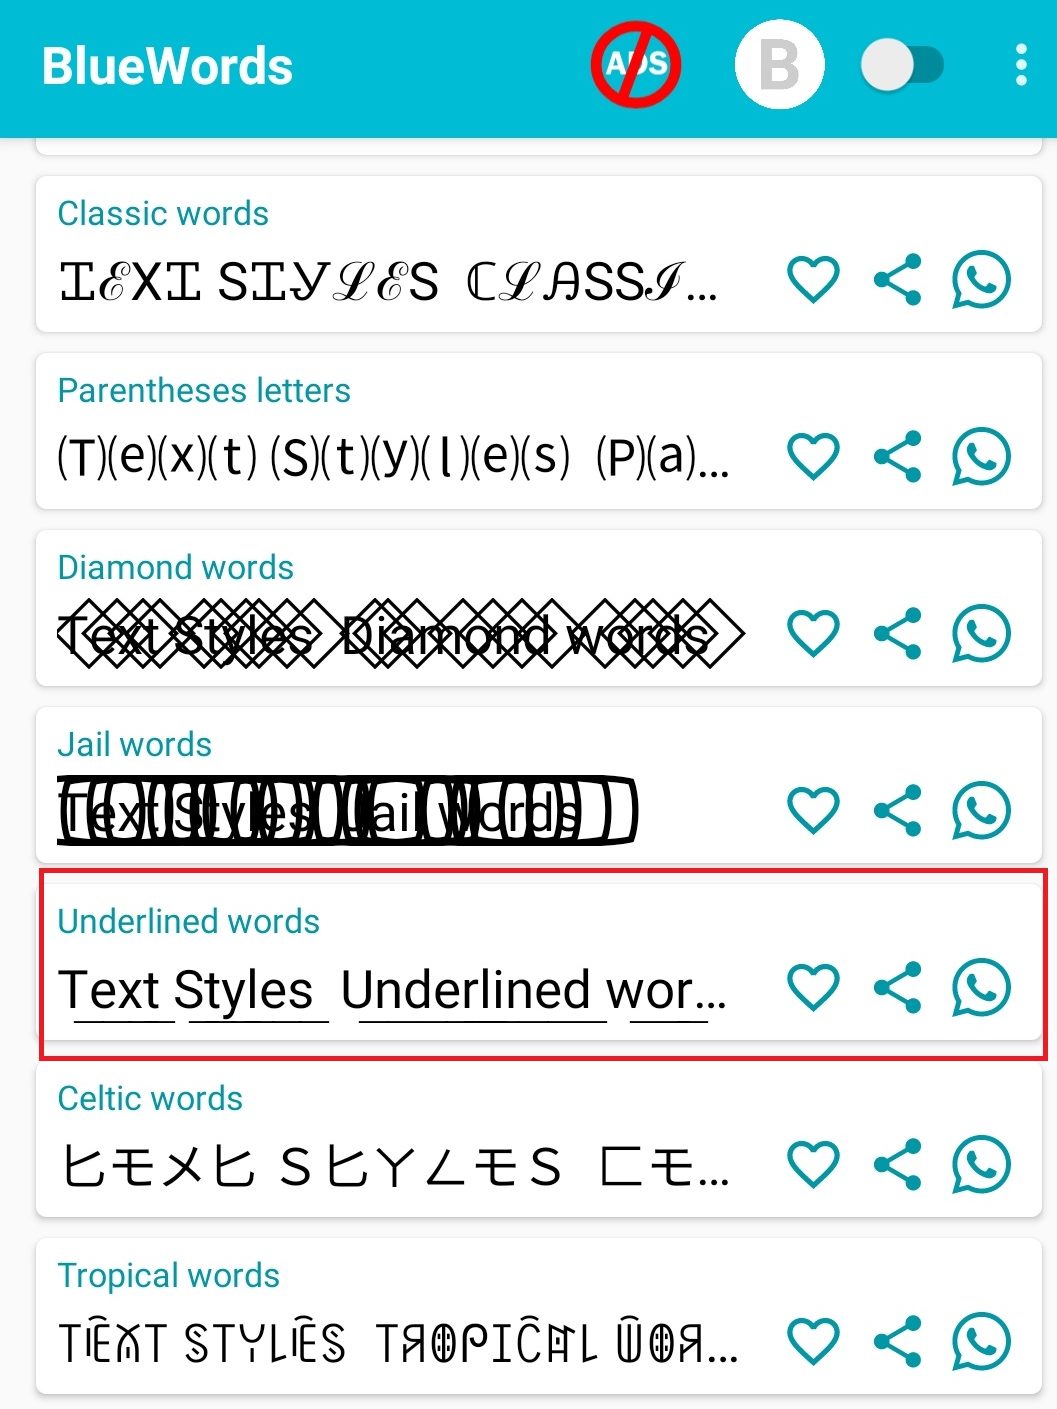 WhatsApp Text Tricks - Underline option on BlueWords